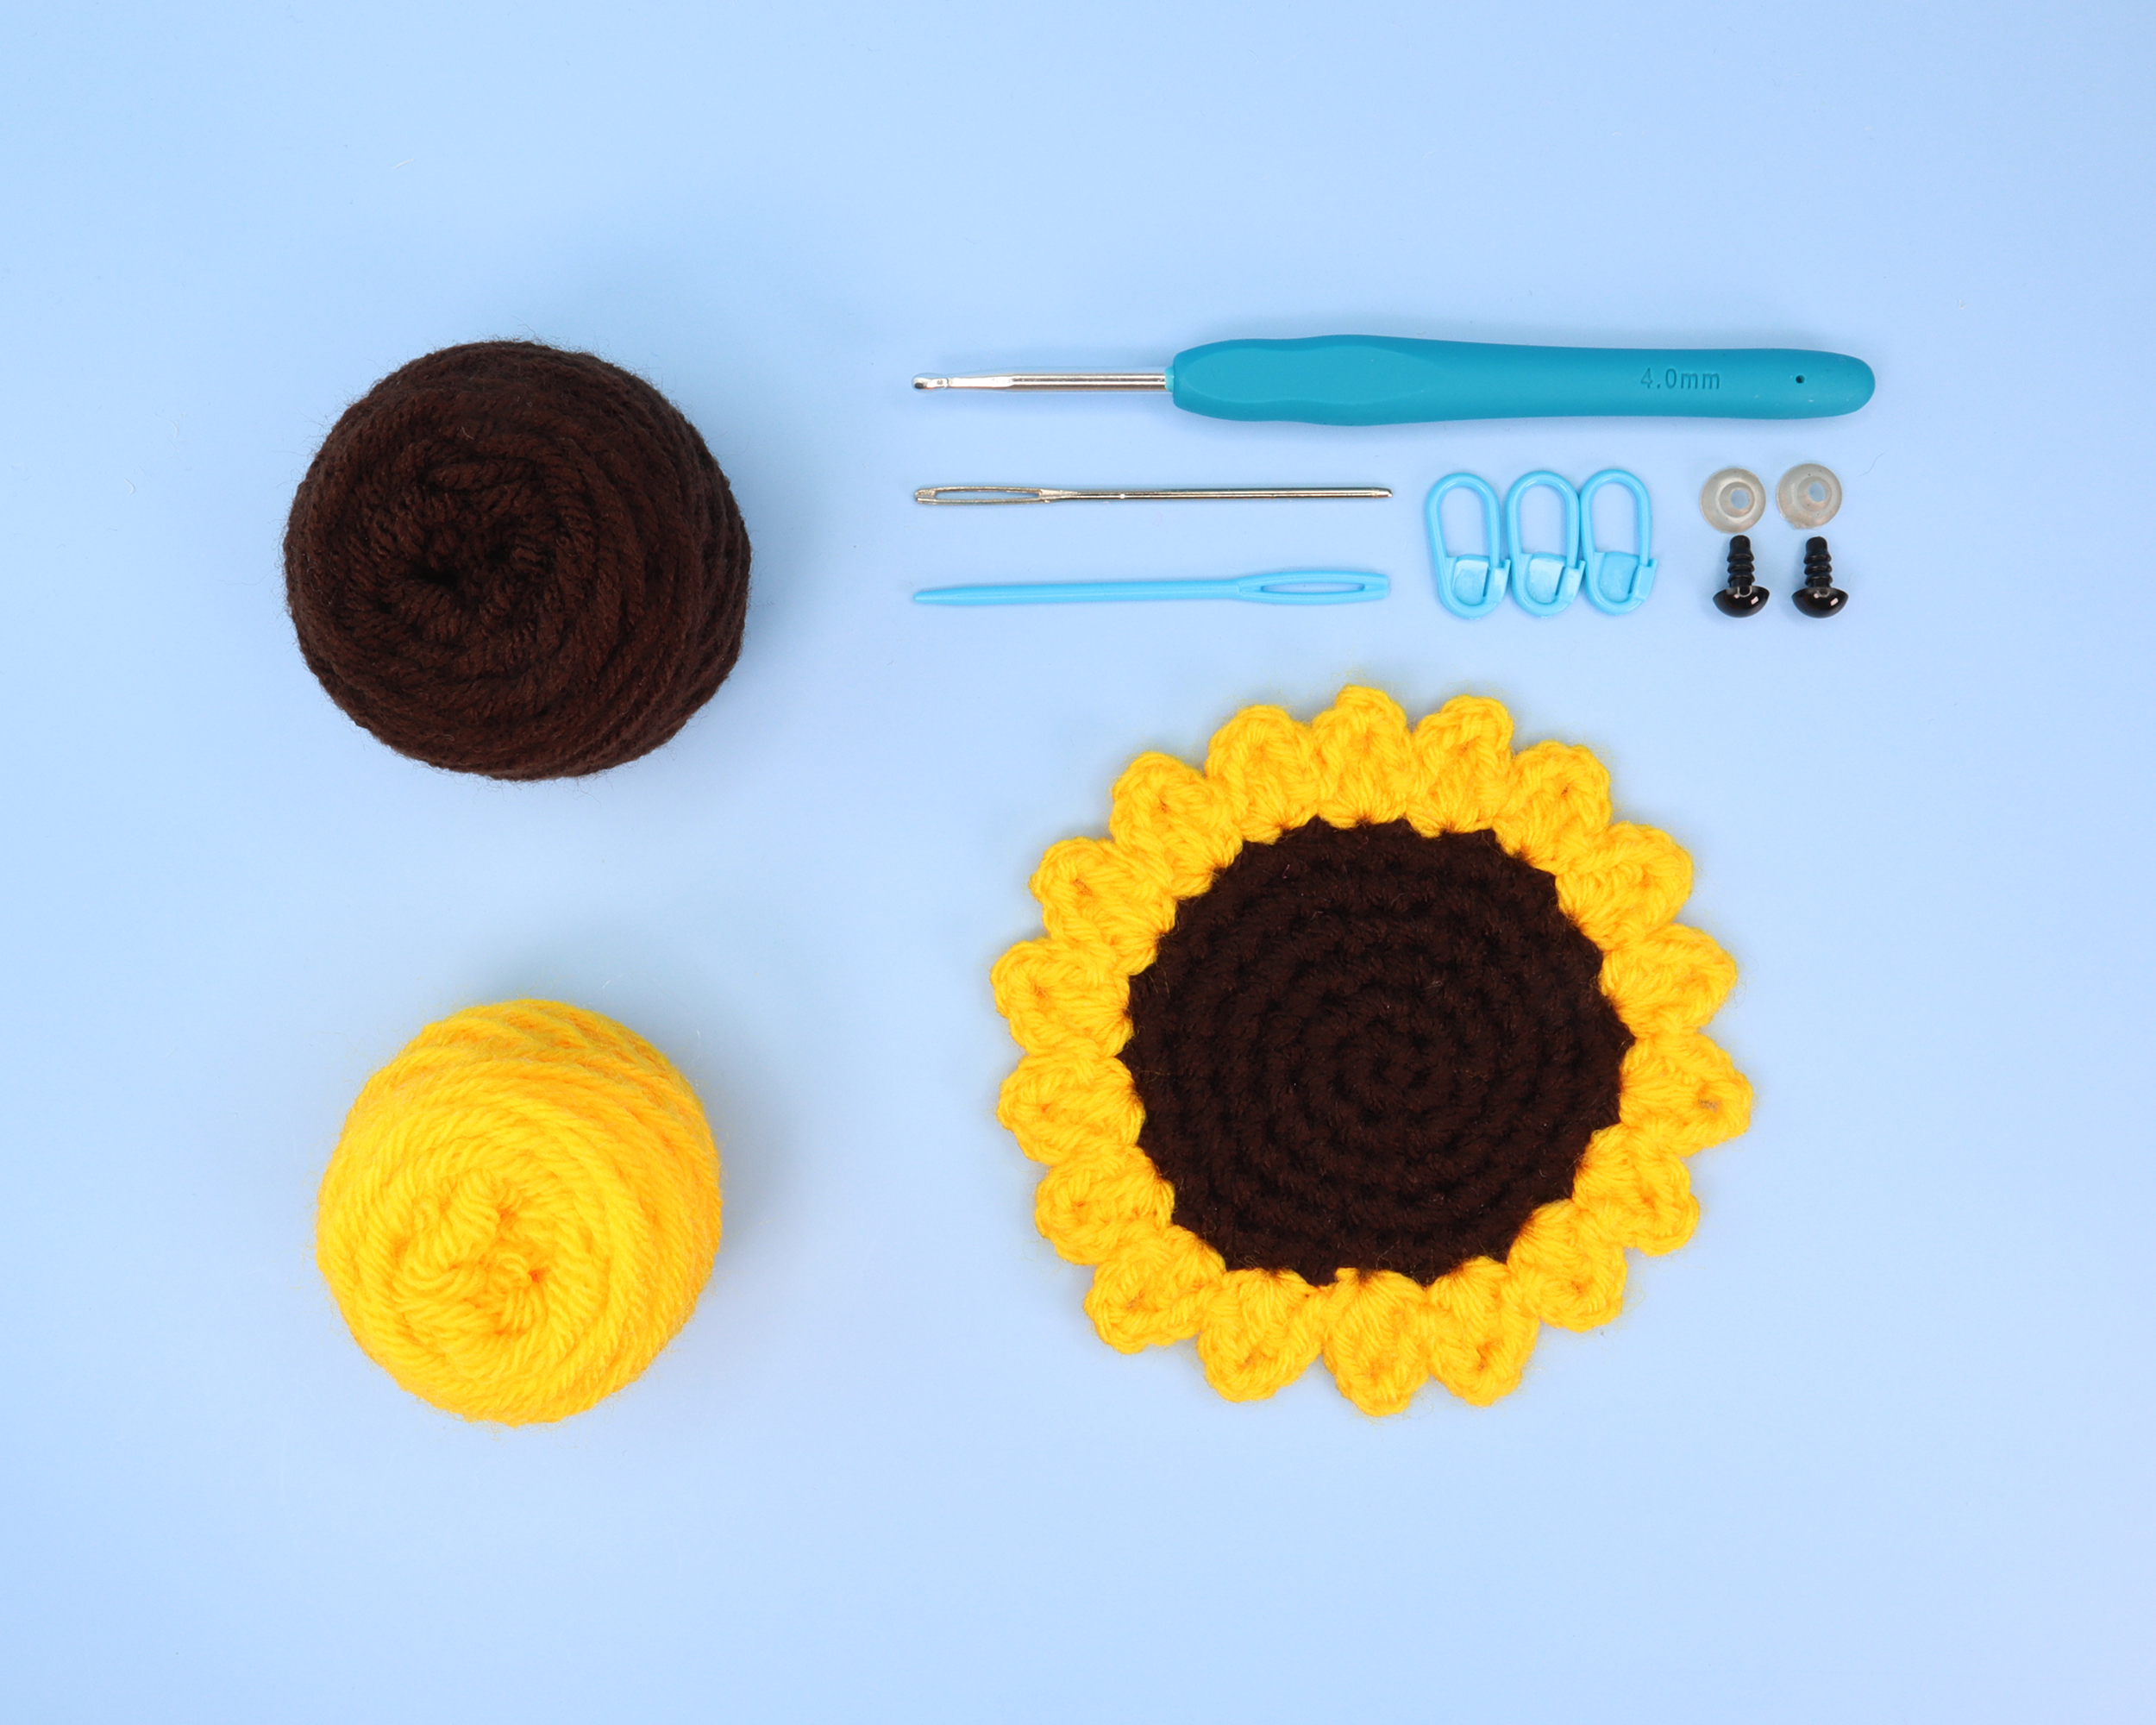 Sunflower Coaster Crochet Kit